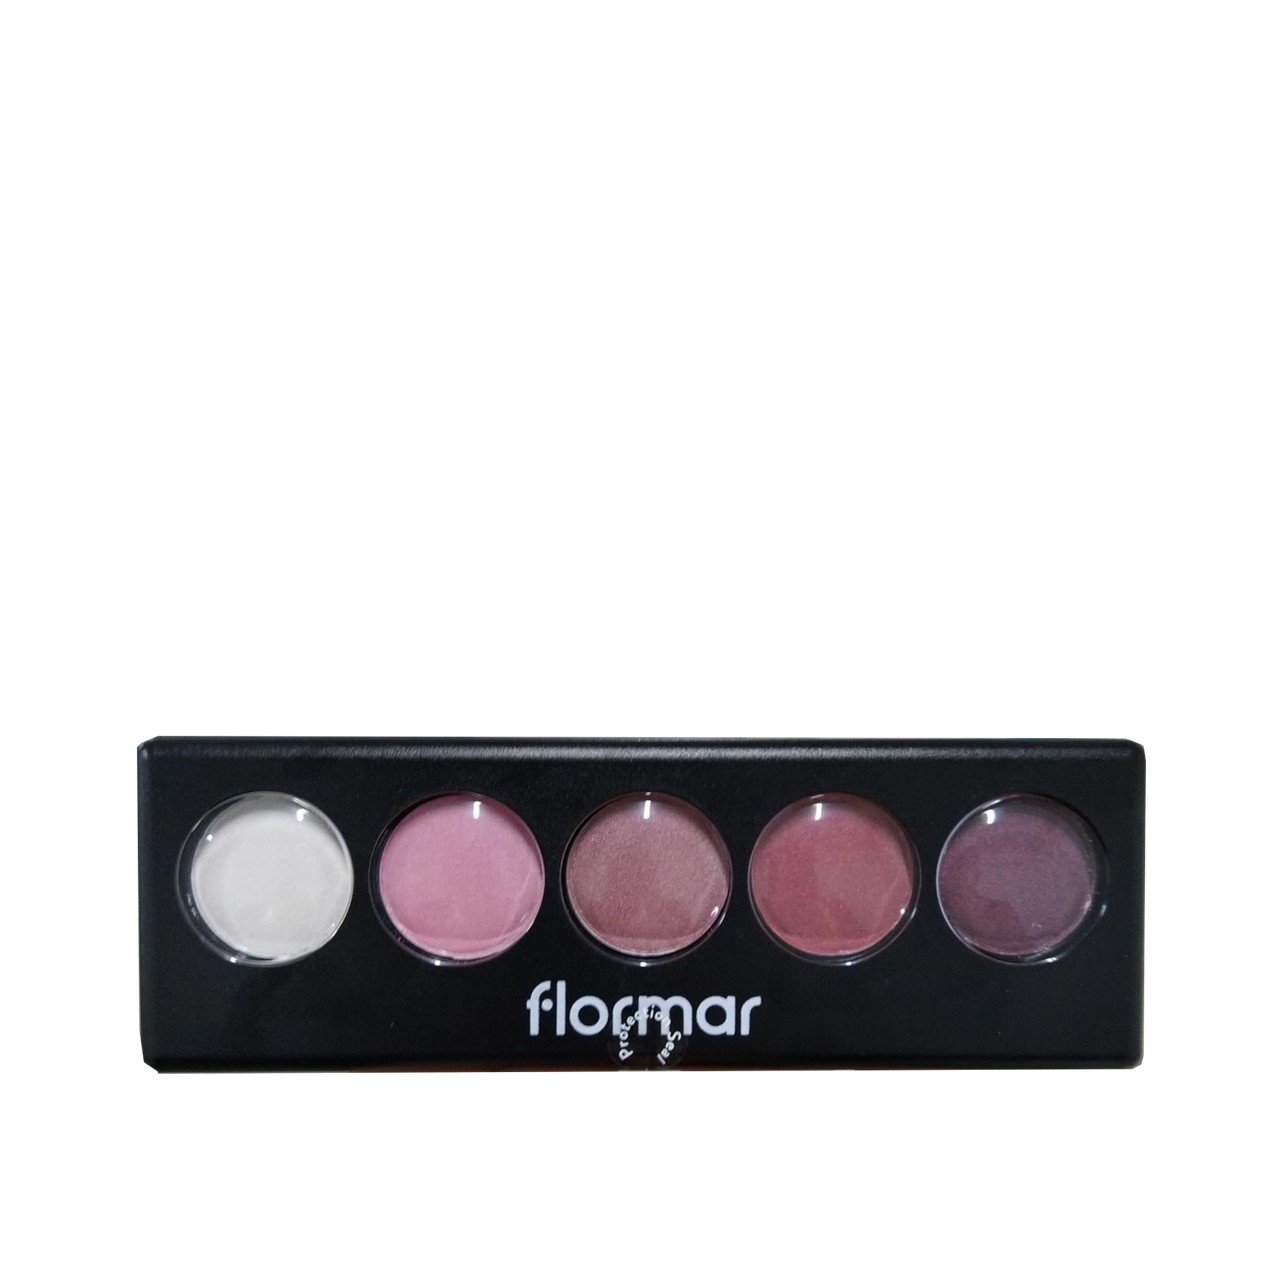 Flormar Color Palette Eyeshadow 06 Pink Desserts 9g (0.32oz)